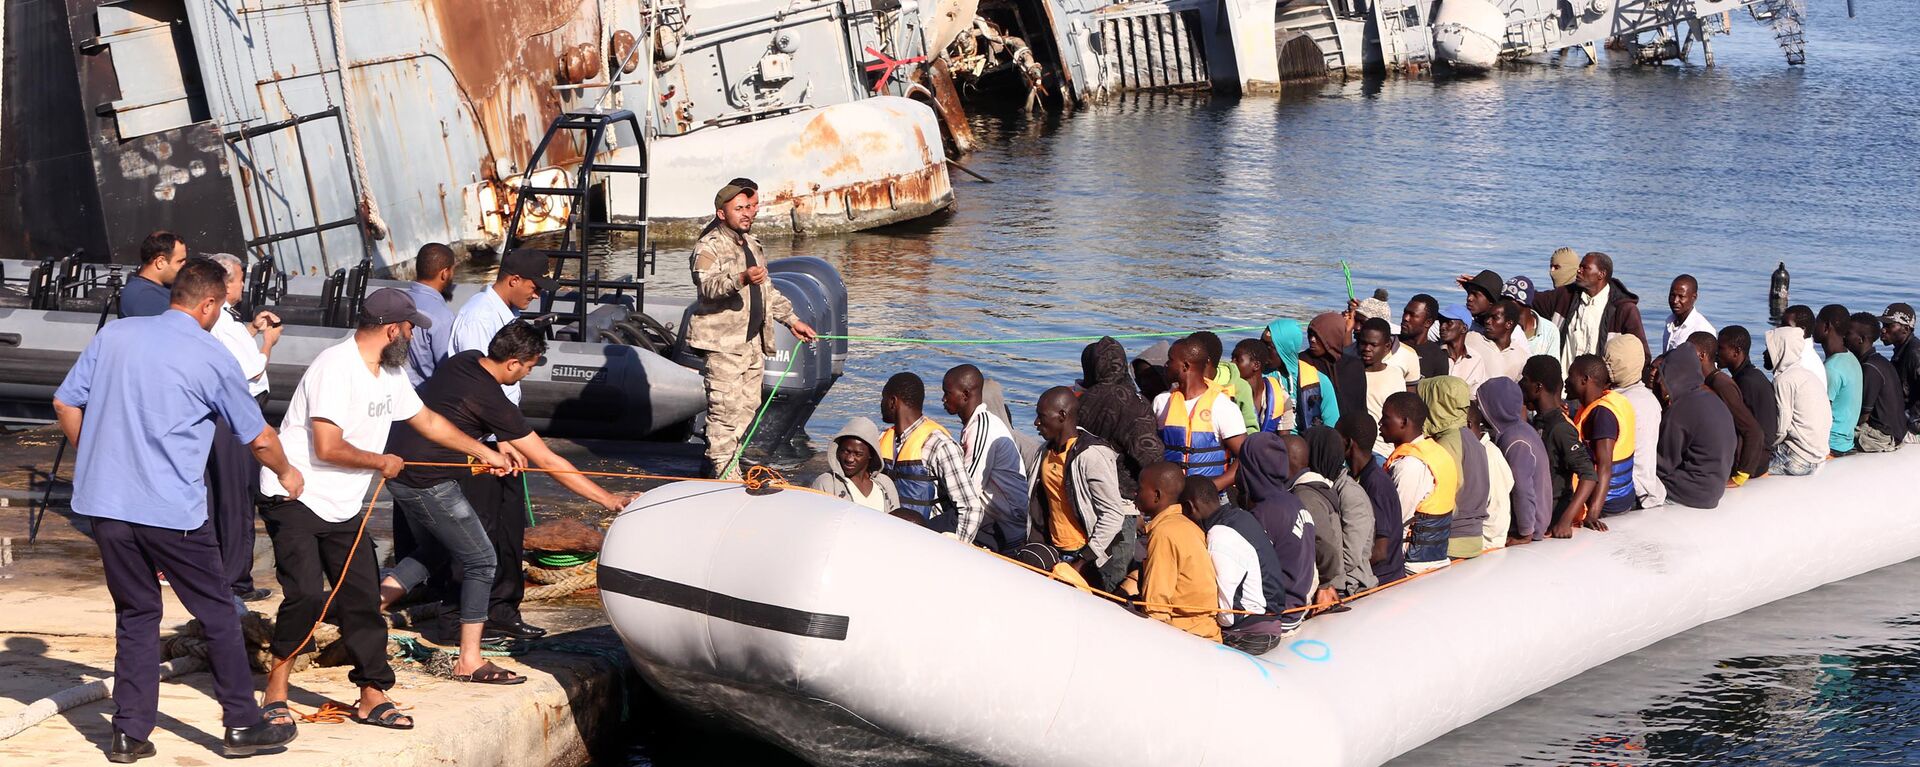  خفر السواحل الليبي يقوم بسحب قارب يحمل مهاجرين أفارقة، تم إنقاذهم أثناء محاولتهم الوصول إلى أوروبا بطريقة غير شرعية، في قاعدة بحرية بالقرب من العاصمة طرابلس في 29 سبتمبر/ أيلول 2015. - سبوتنيك عربي, 1920, 26.04.2023